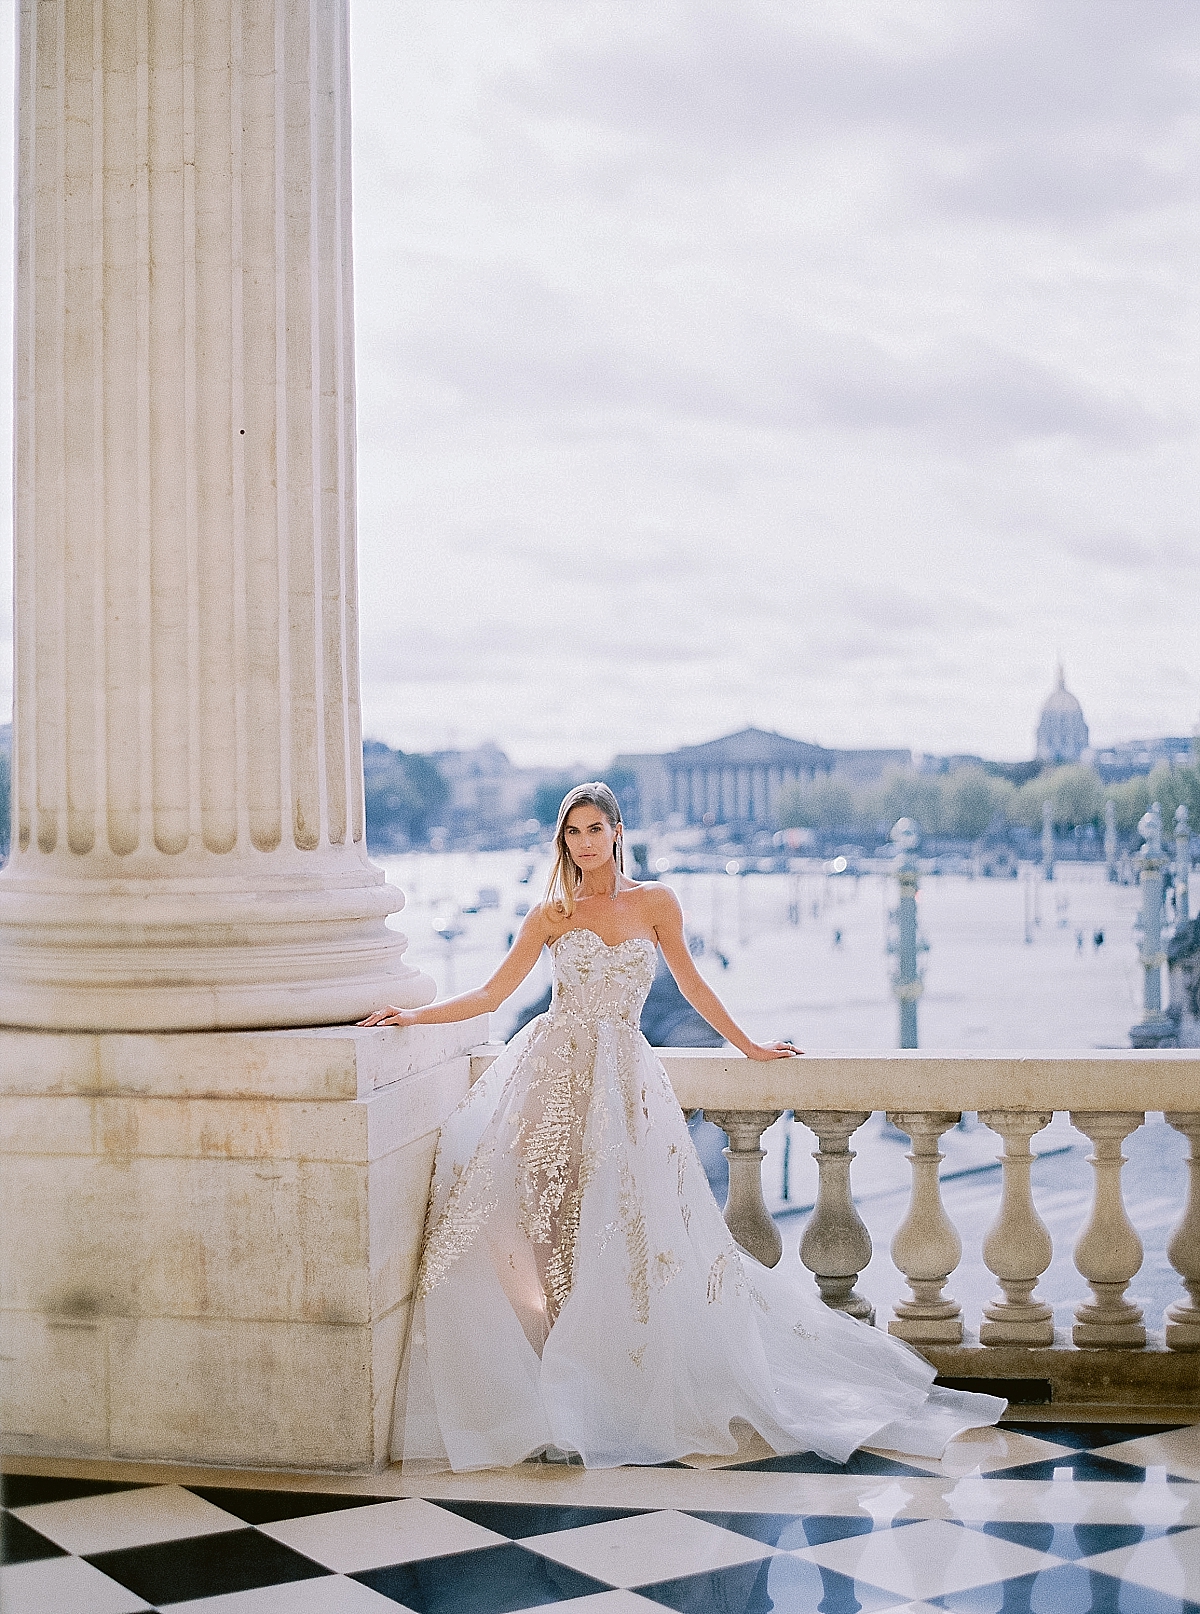 An Editorial Pre-Wedding Shoot At Hotel De Crillon Paris - Audrey